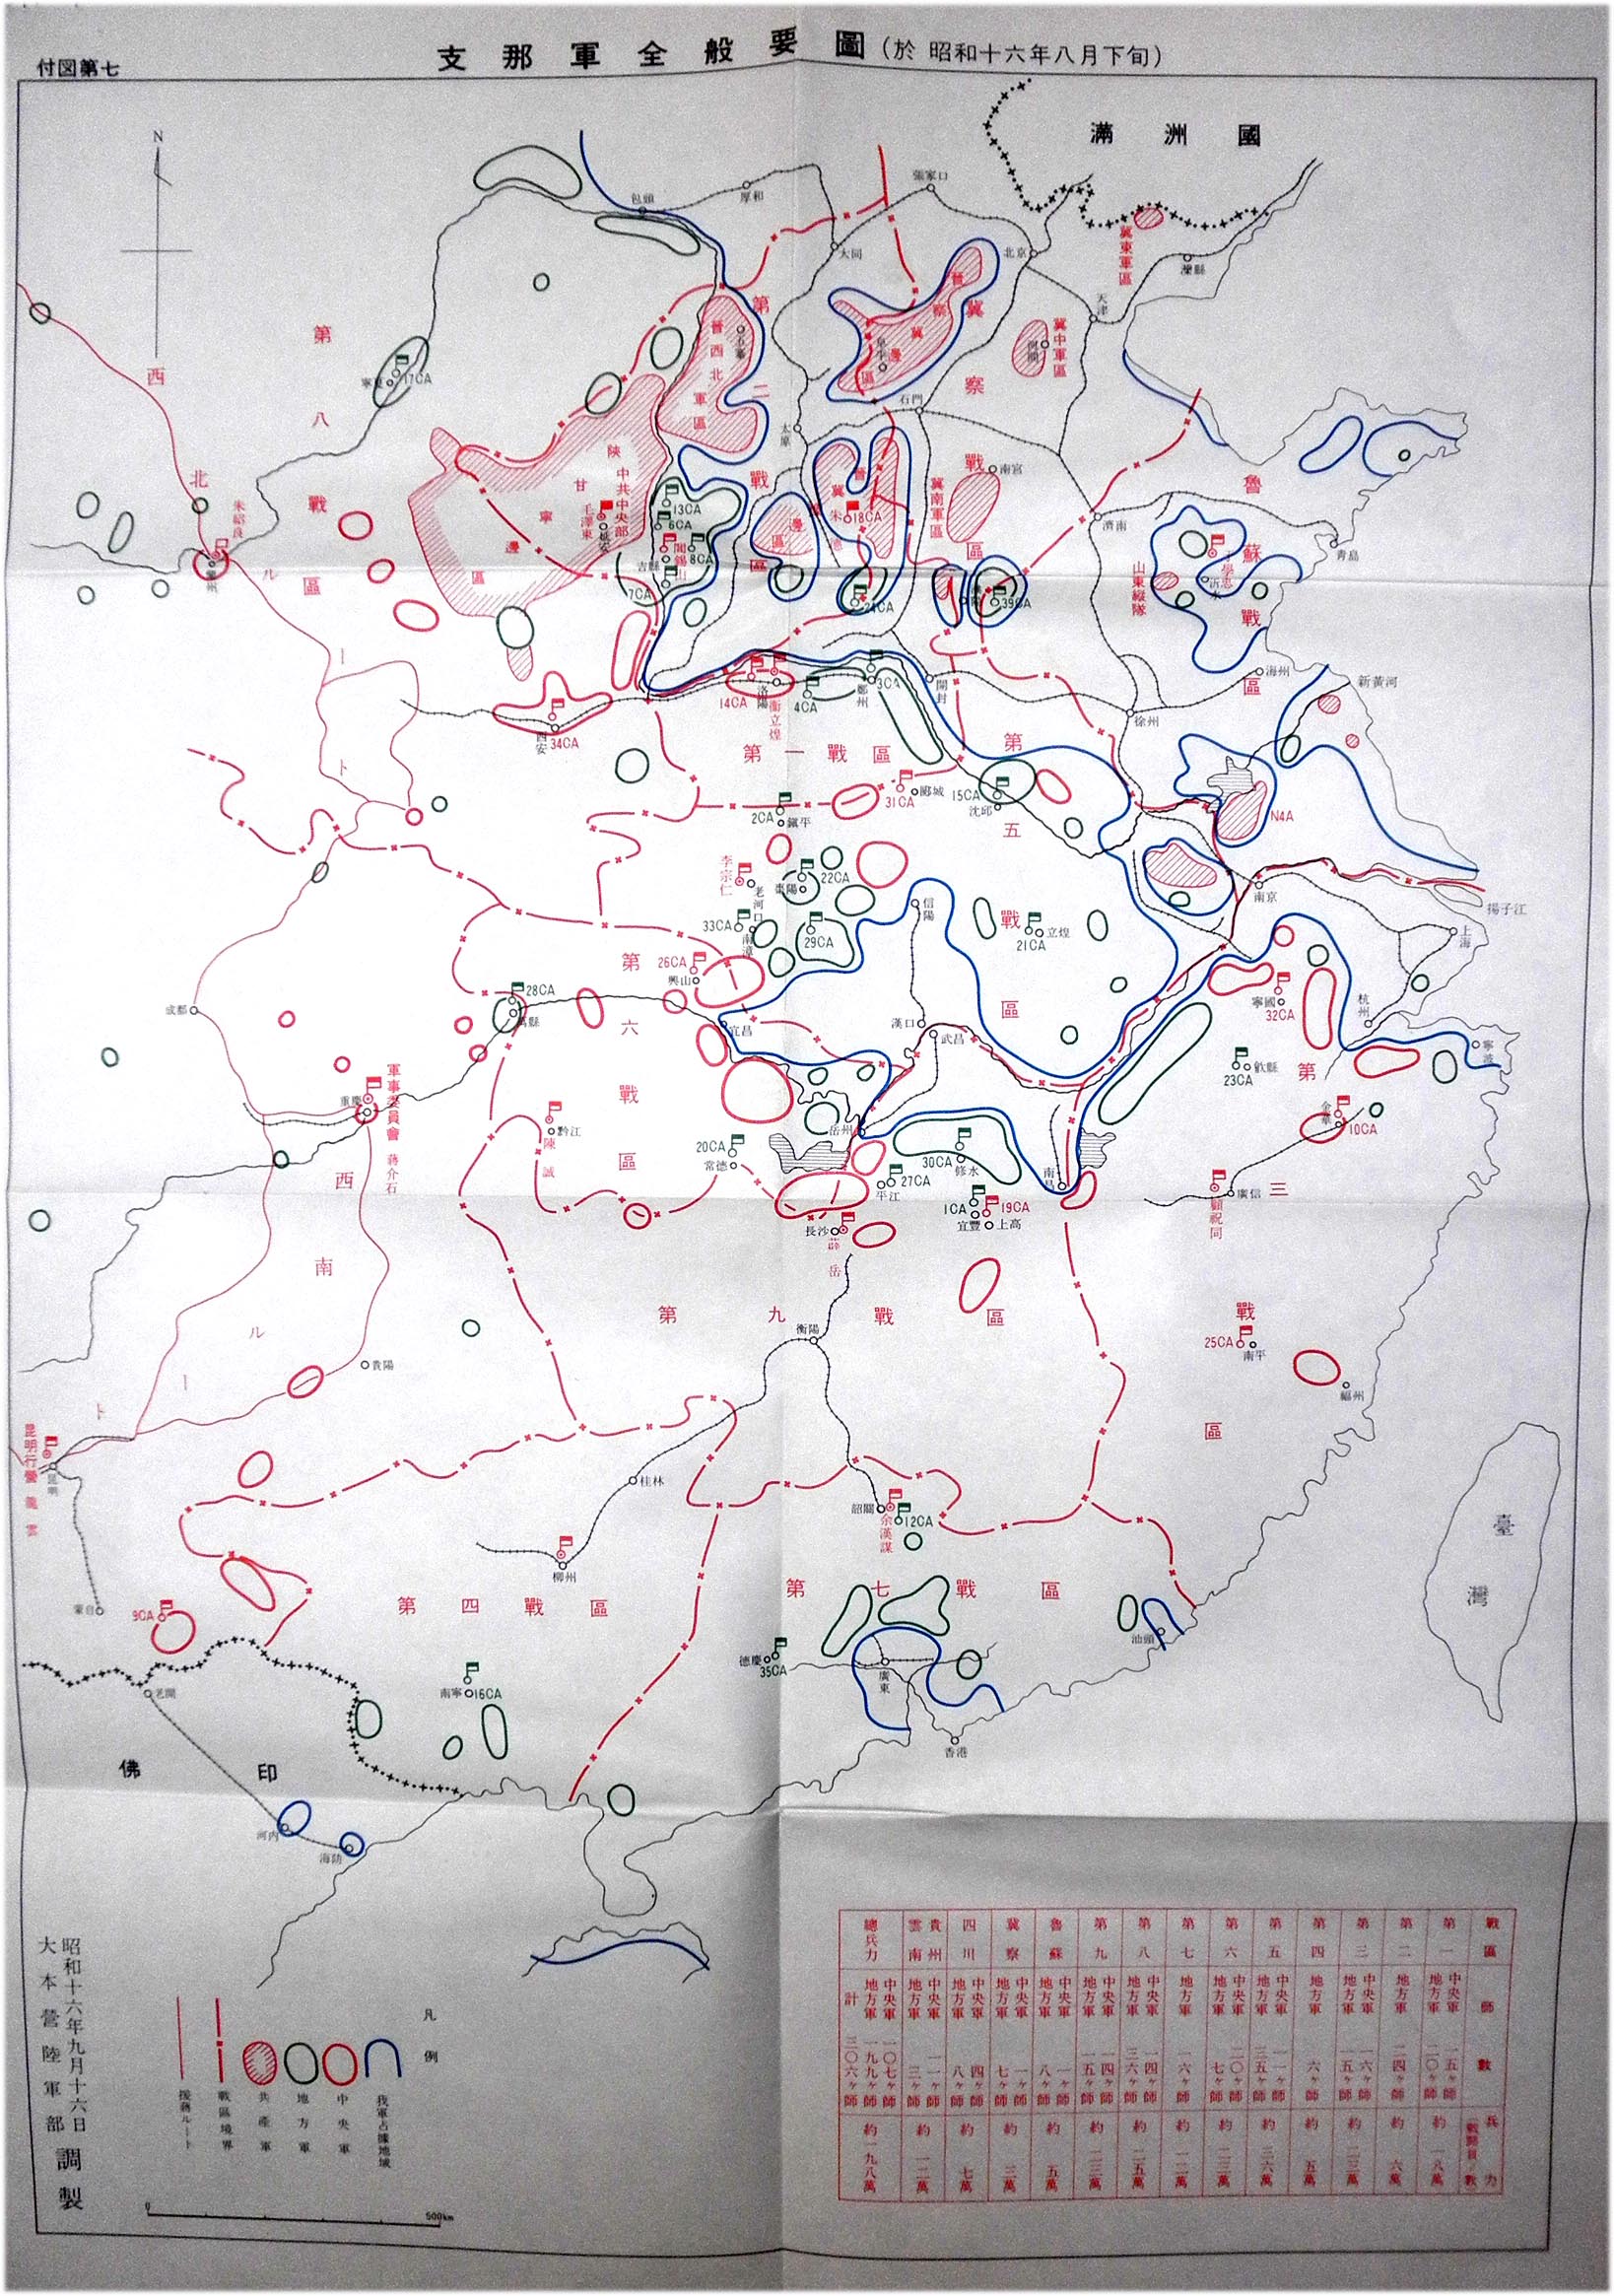 日帝大本營陸軍部繪製的1941年8月下旬大陸形勢圖。藍線：日軍佔據地域 斜線紅圈：共軍集結地域 紅圈：蔣軍集結地域